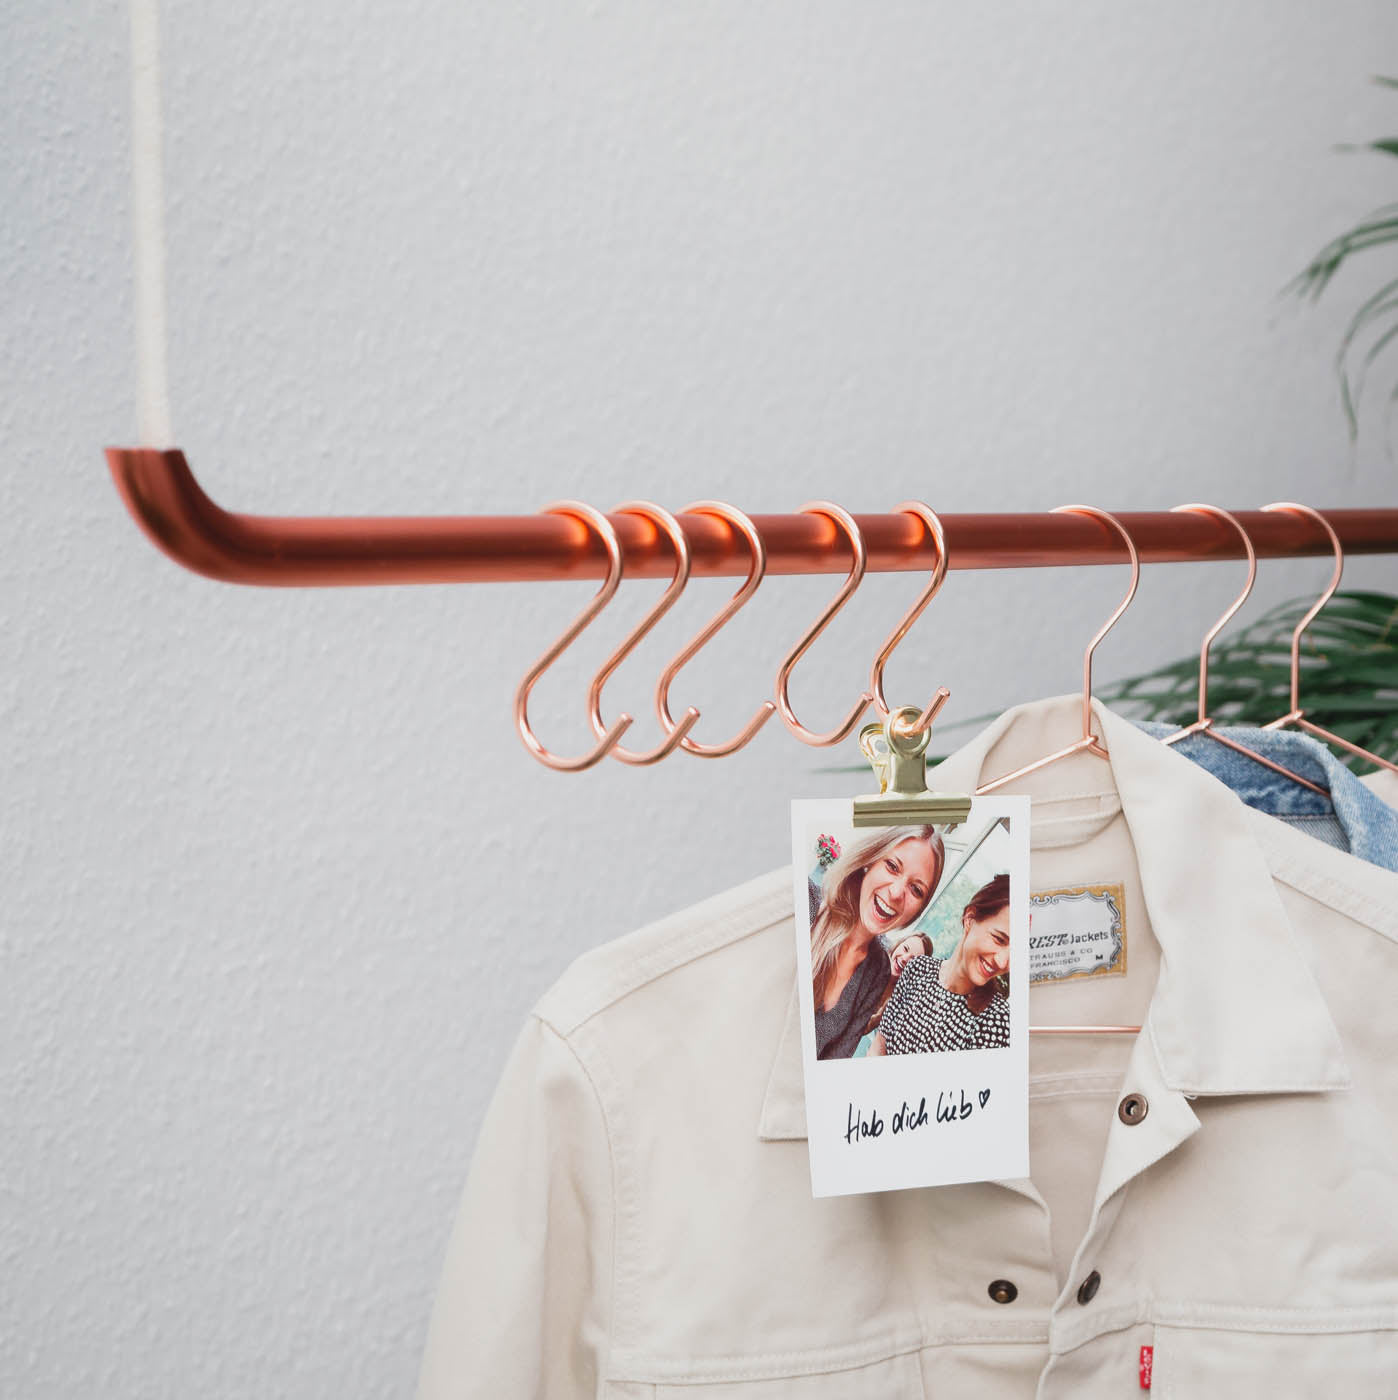 Produktfoto von Kupfer Kleiderstangen mit S-Haken und Kleiderbügel